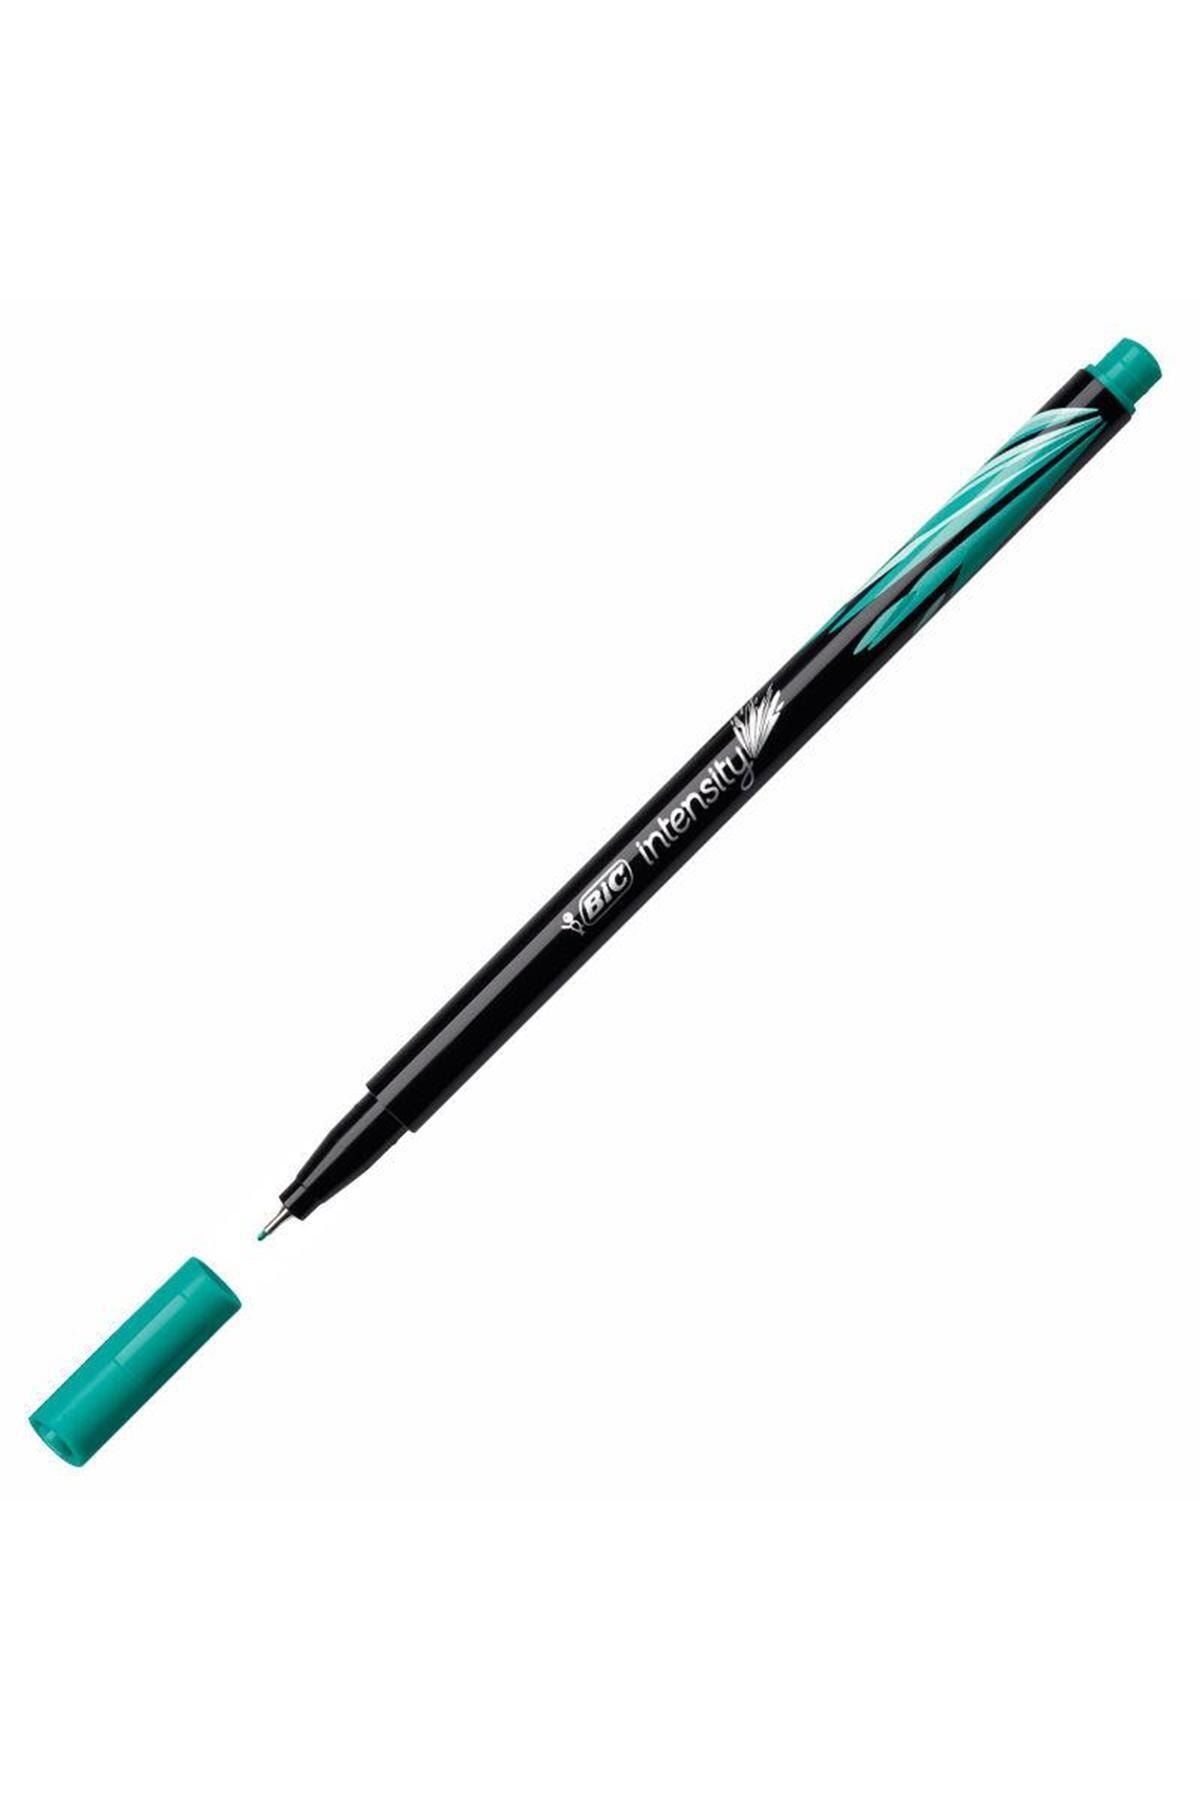 Bic Marka: Intensıty Zümrüt Yeşili Keçe Uçlu Kalem 950458 Kategori: Kuru Boya Kalemi